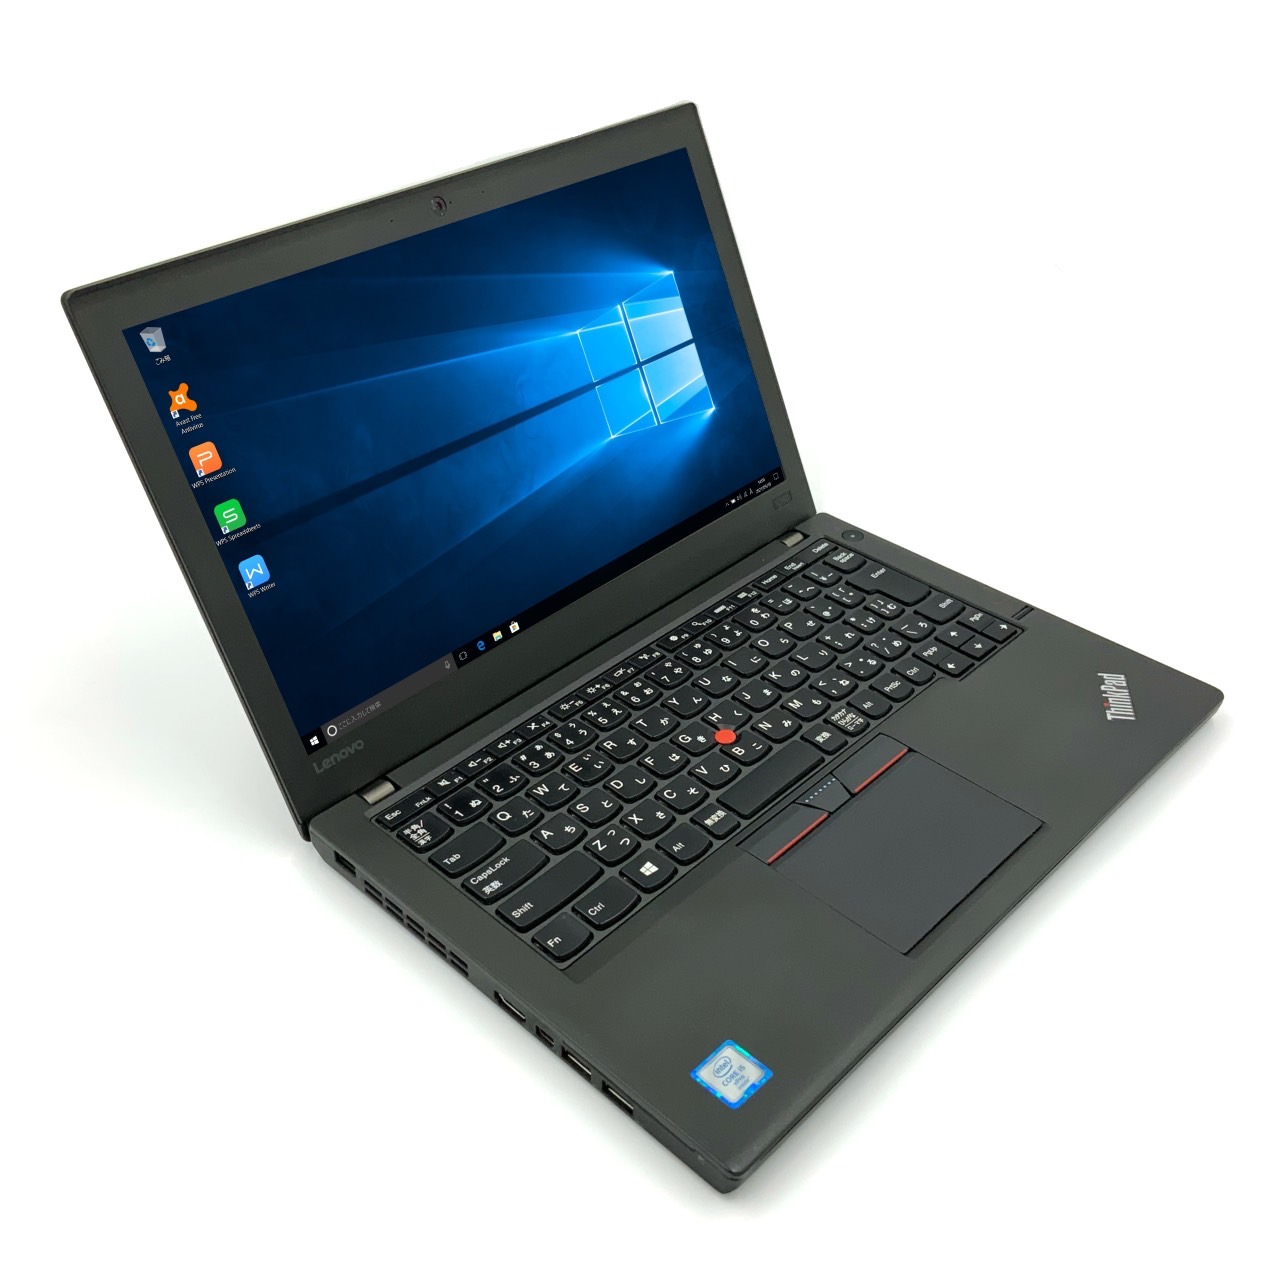 【楽天市場】【軽量】【モバイルノート】 Lenovo ThinkPad X260 第6世代 Core i5 6200U/2.30GHz 4GB